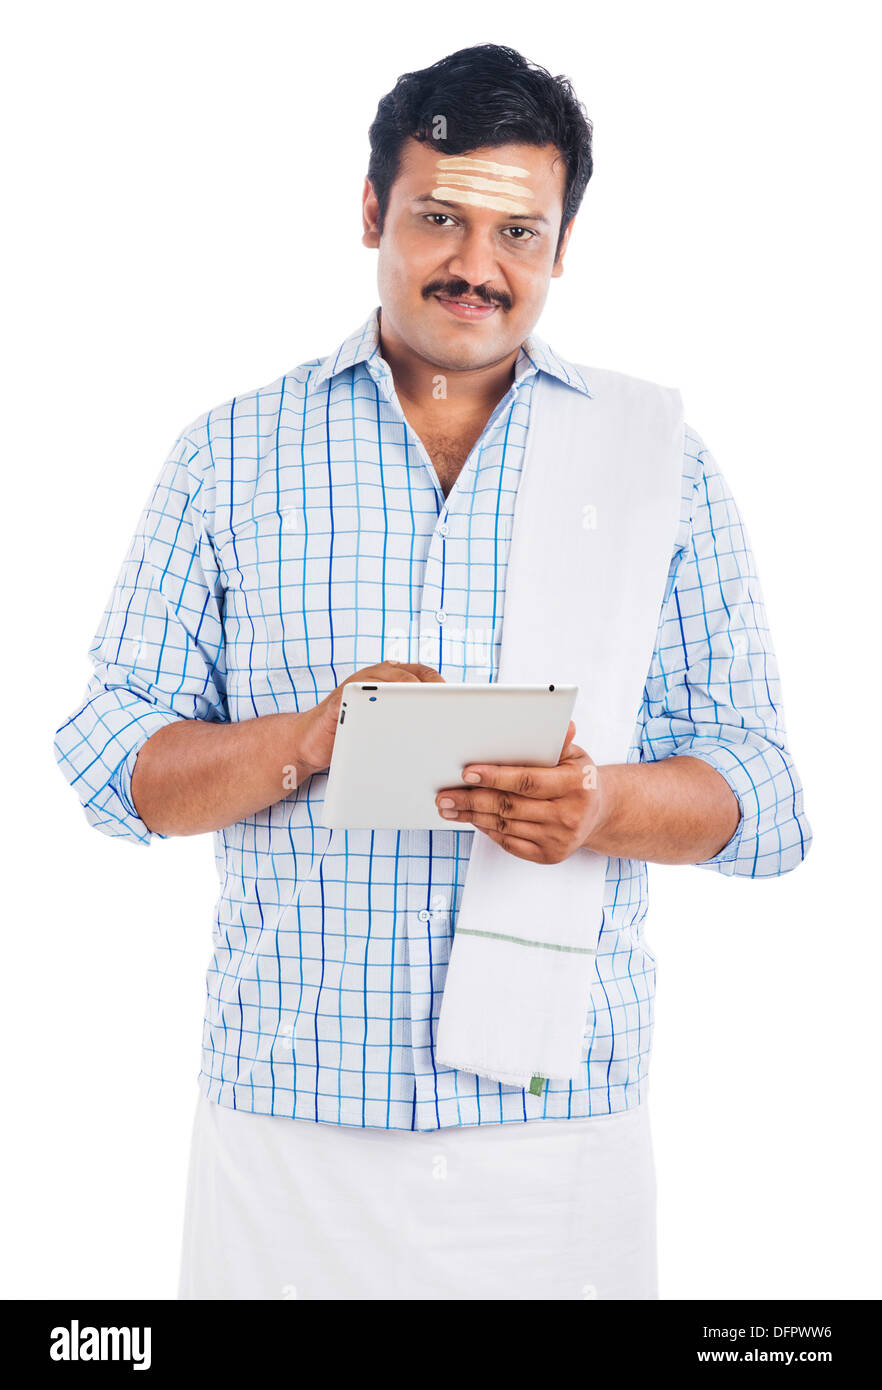 Sud indiane uomo utilizzando una tavoletta digitale Foto Stock